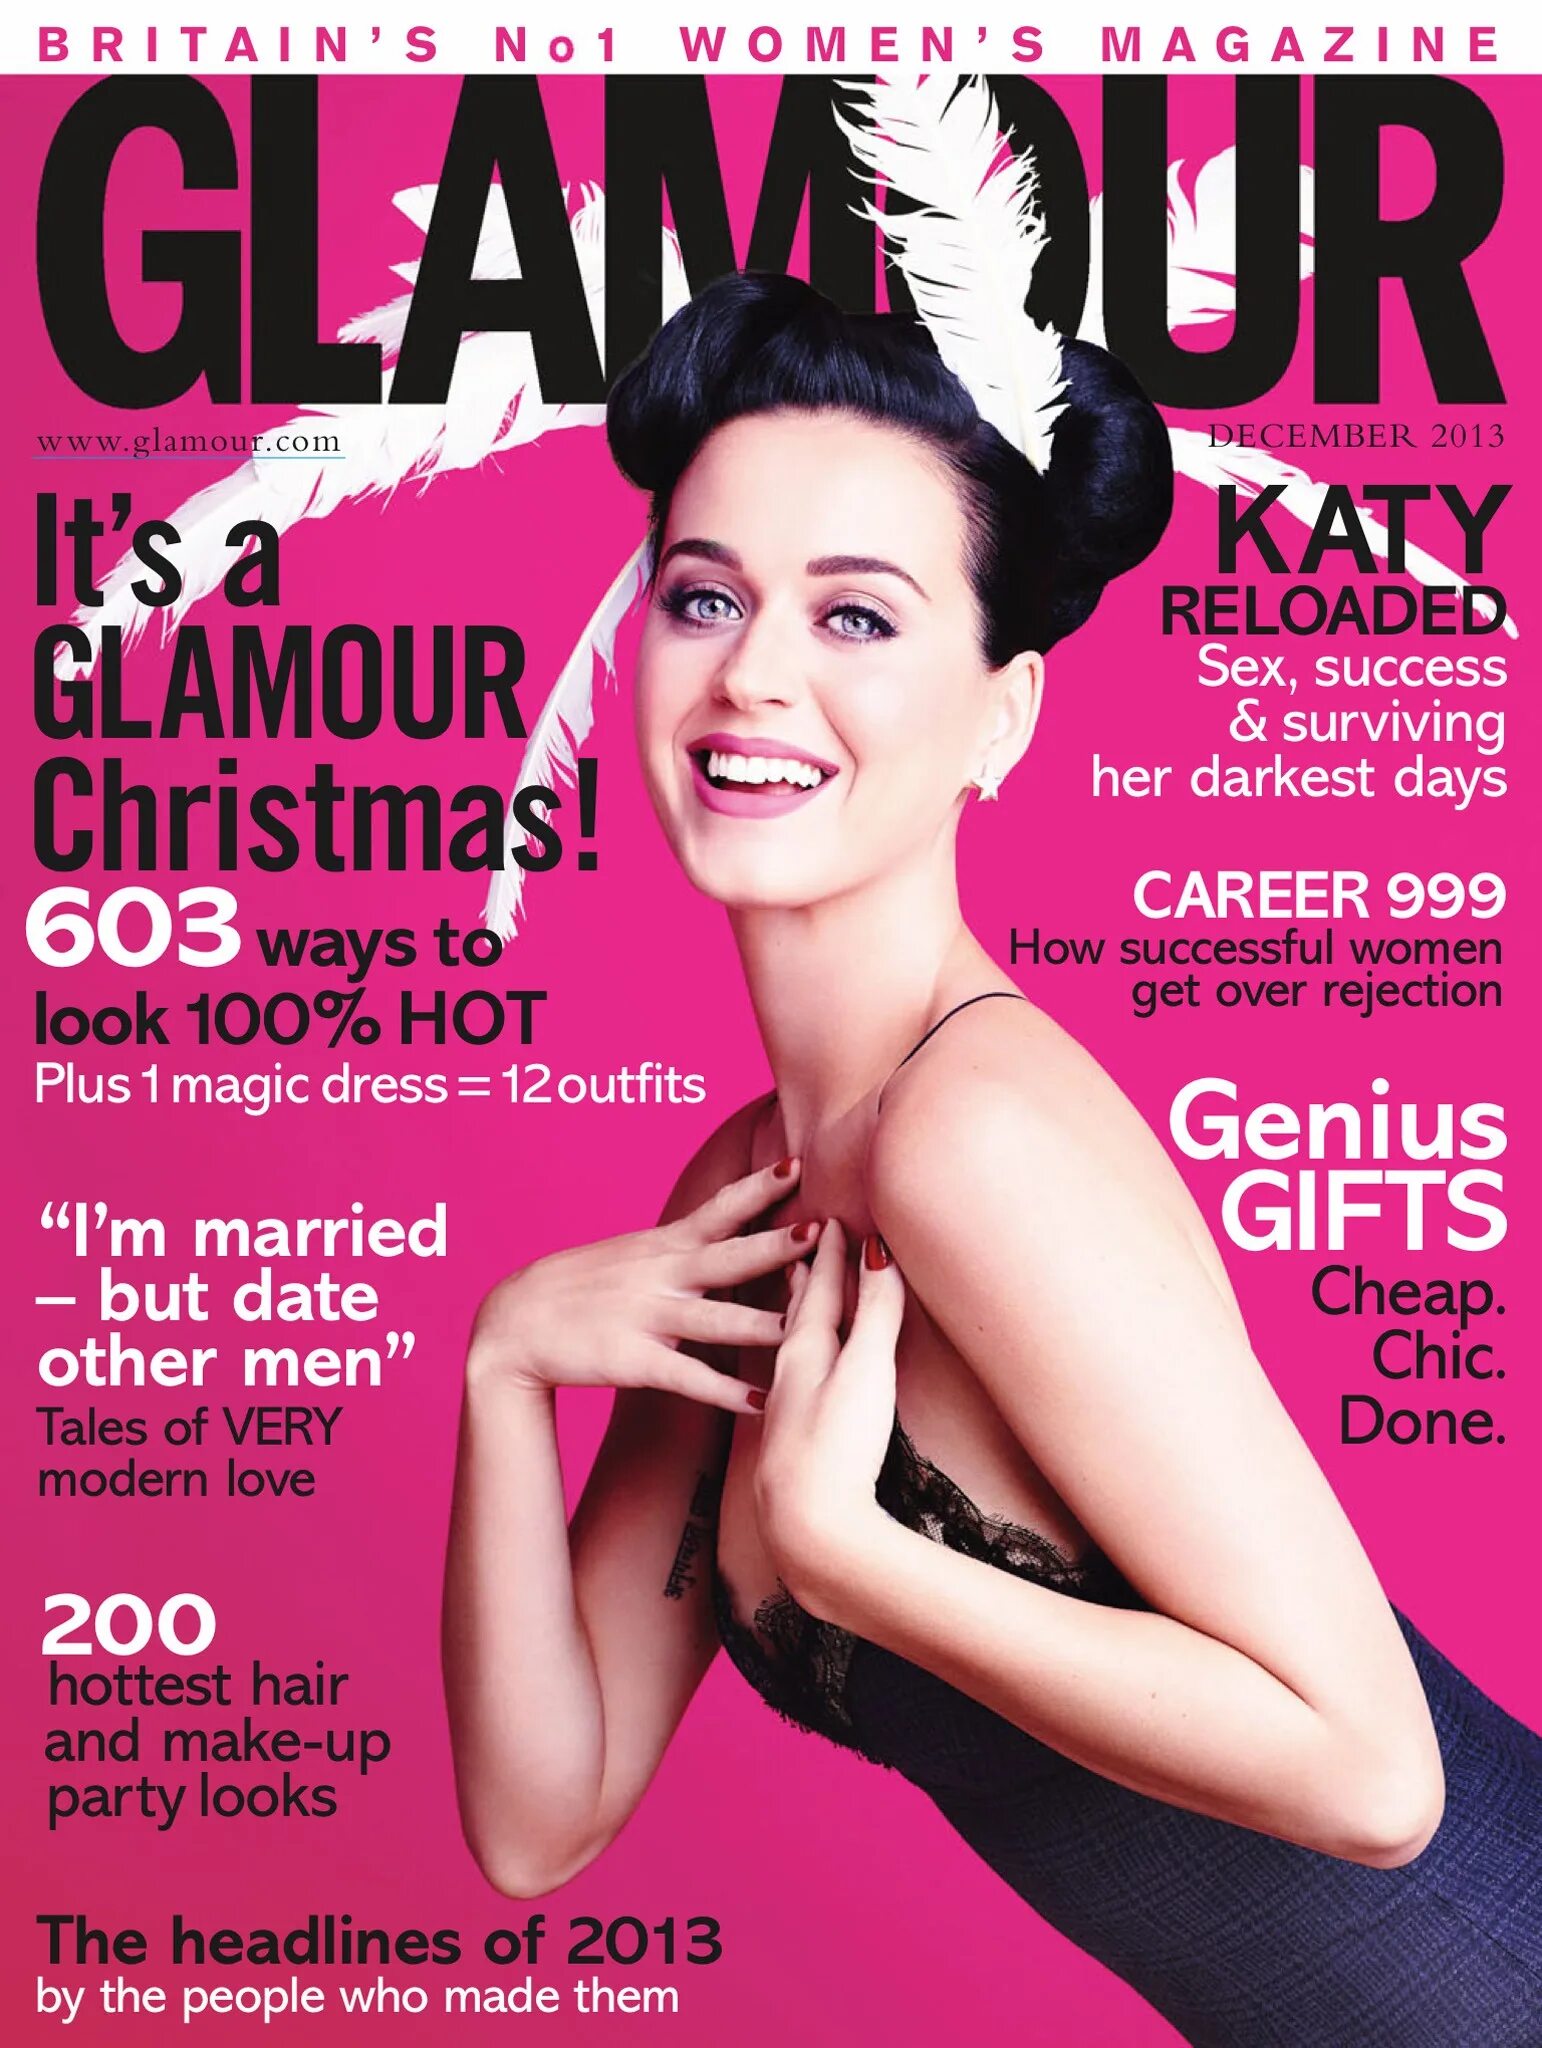 Glamour журнал. Кэти Перри журнал. Кэти Перри обложка. Женщины на обложках журналов. Обложки модных журналов.